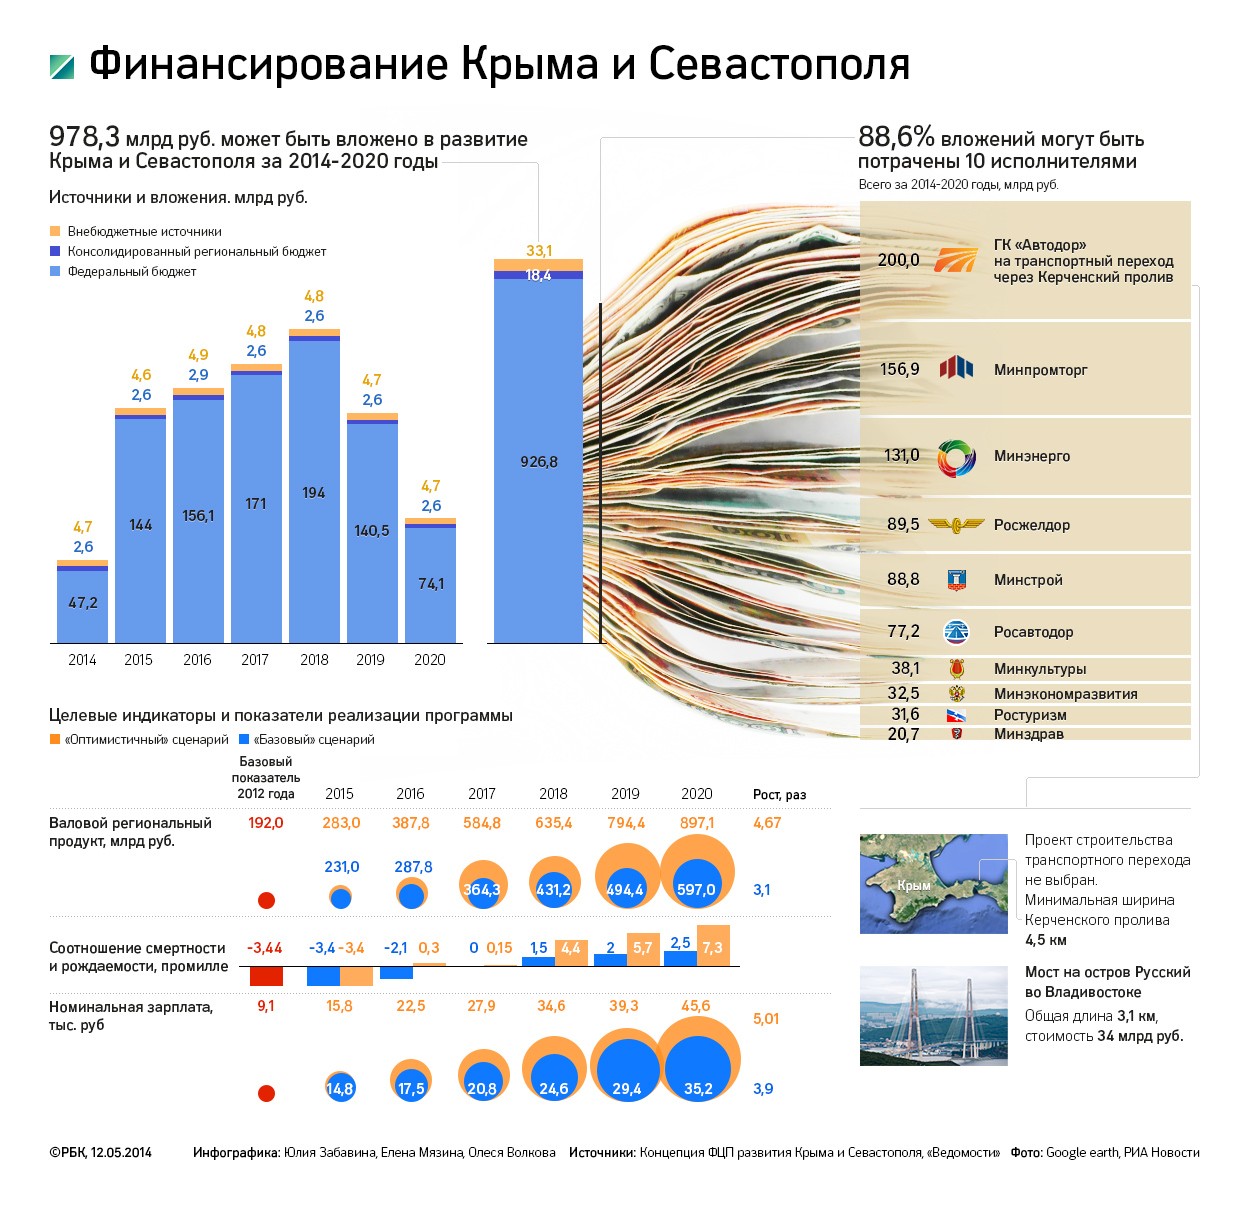 Расследование РБК: кому принадлежат курорты Крыма